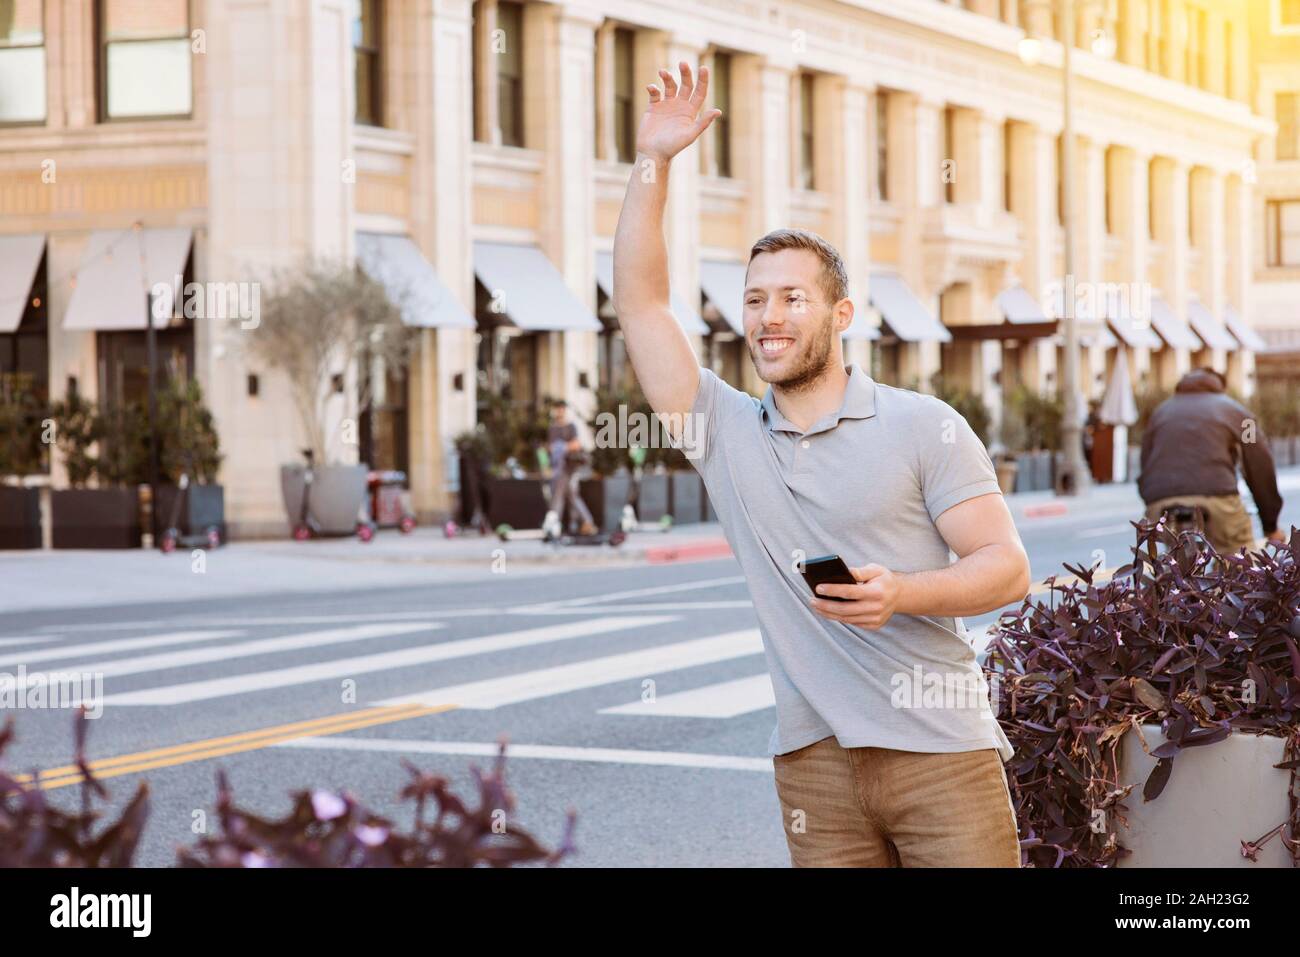 Weißer Mann mit einem Lächeln fordert ein uber-Treiber, während sein Handy in der Stadt auf einem hellen Tag Stockfoto